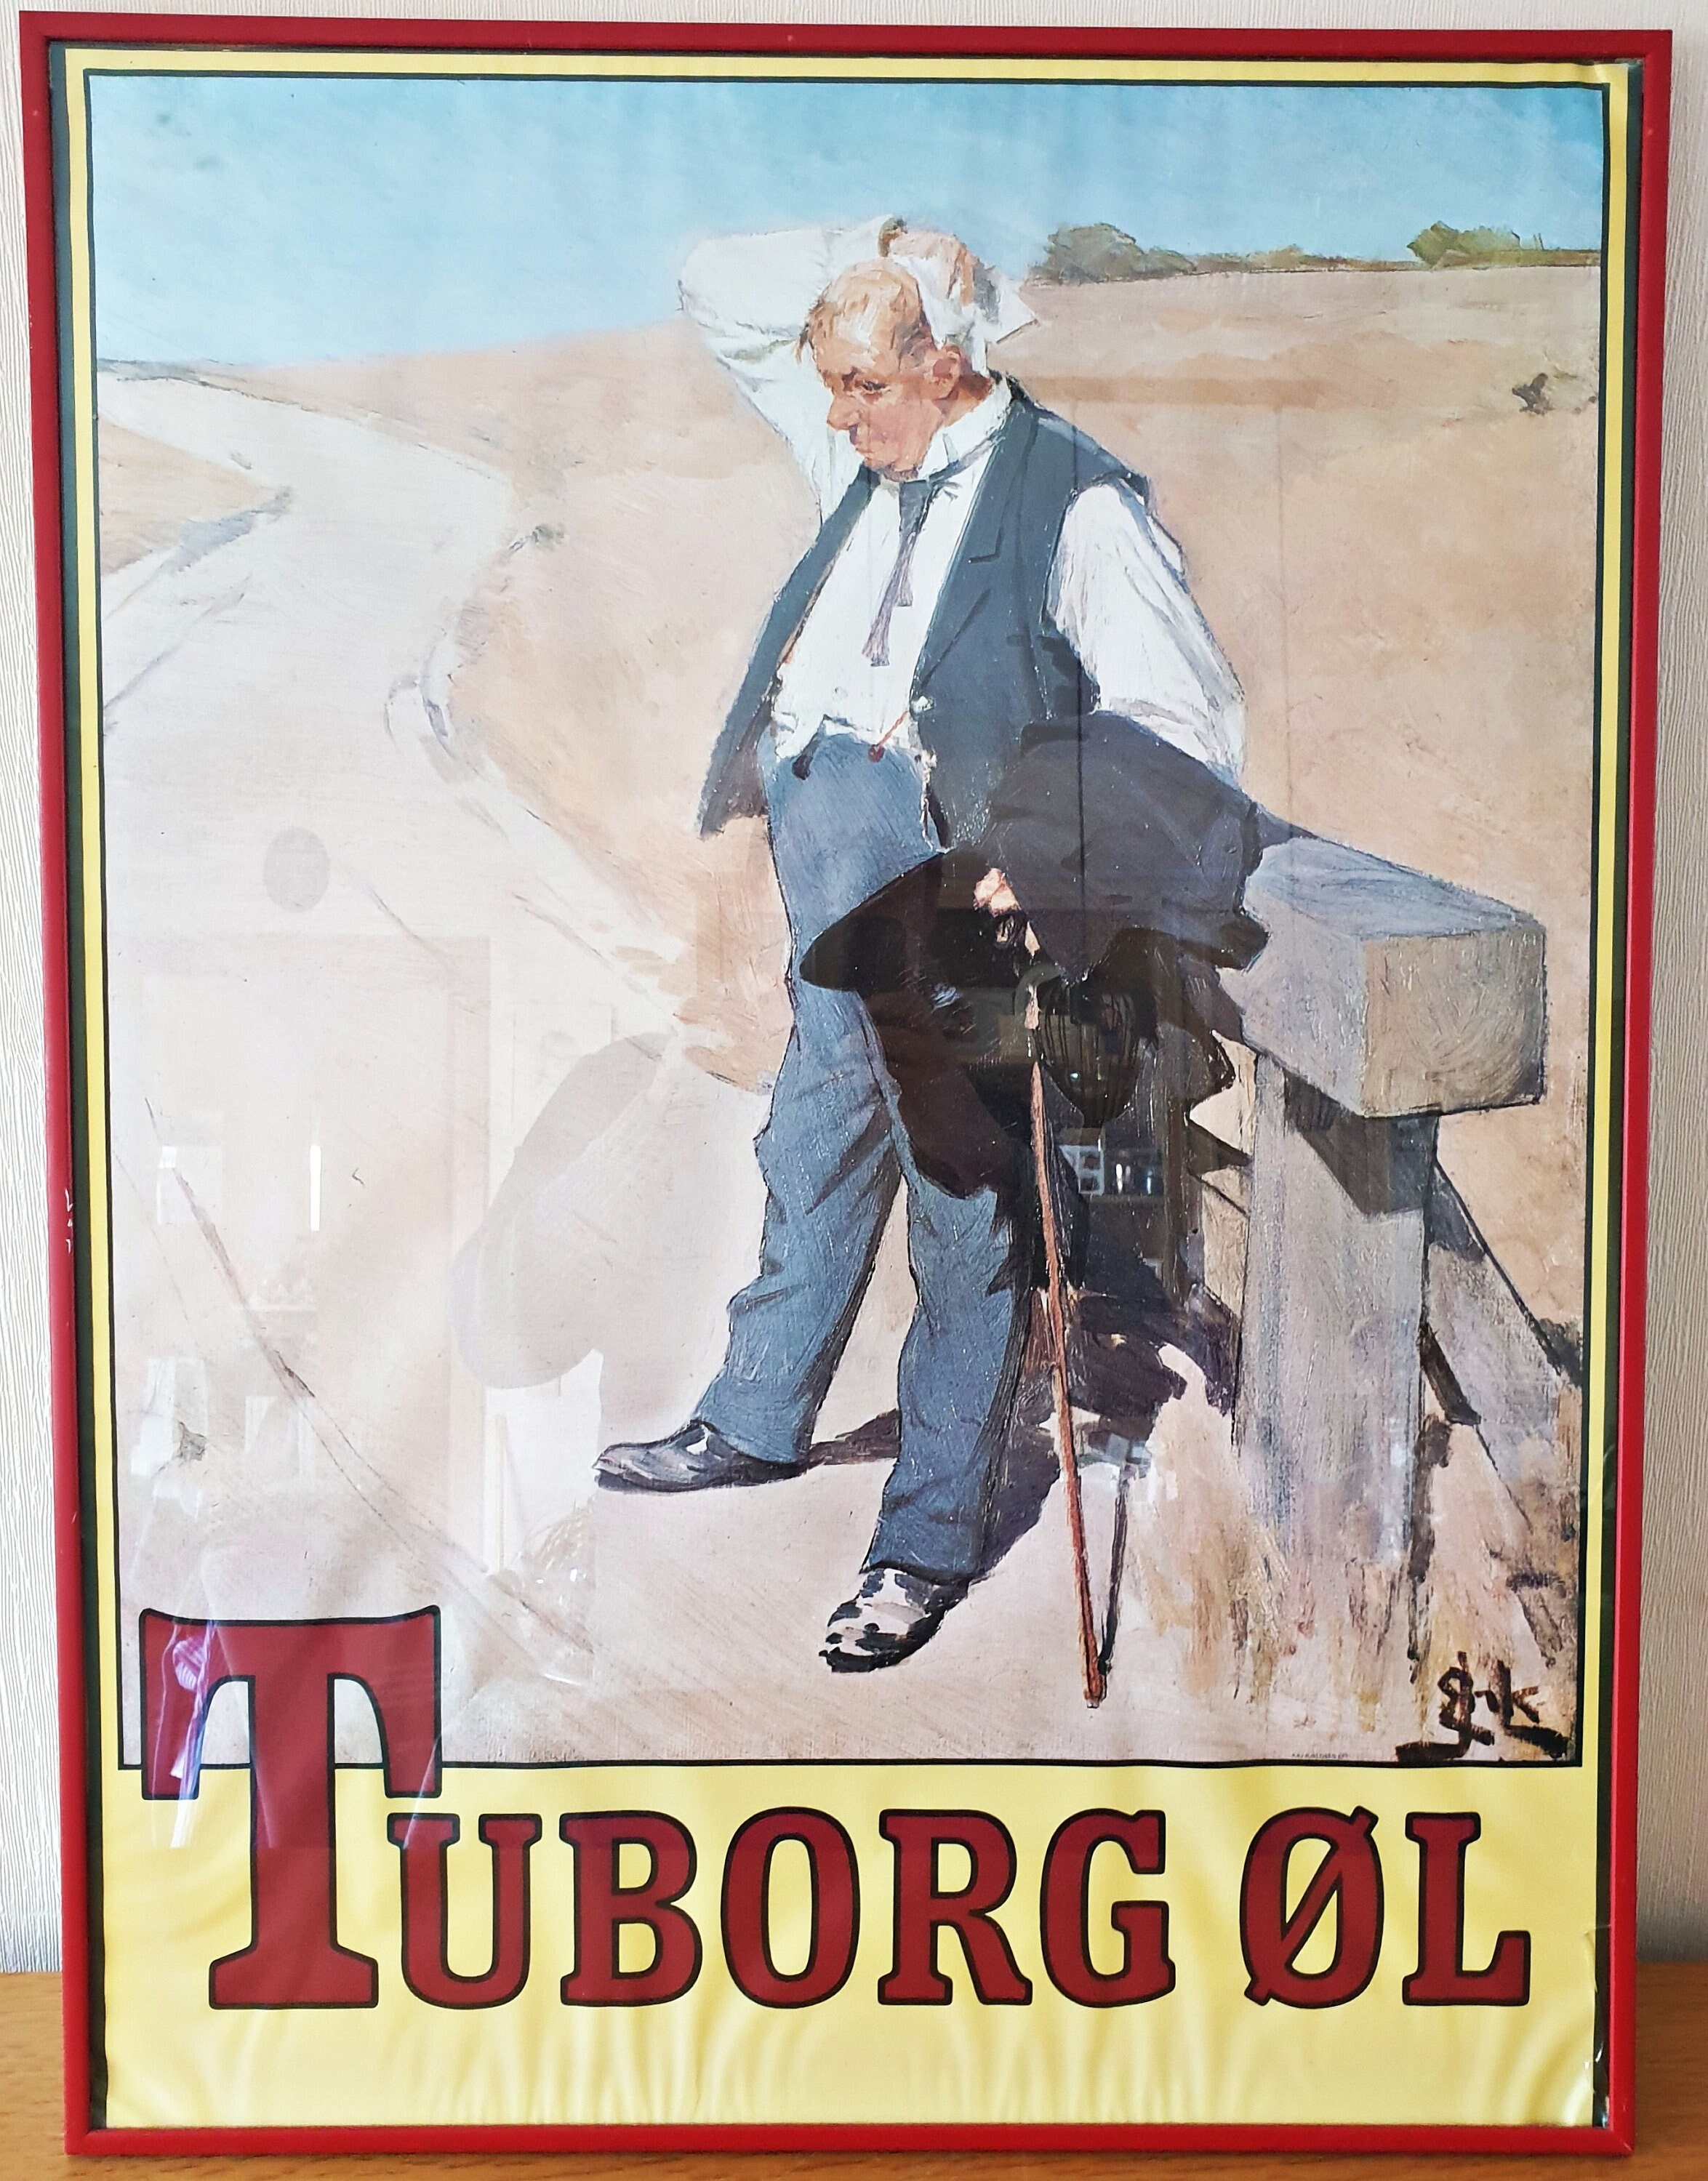 Tuborg Poster Etsy